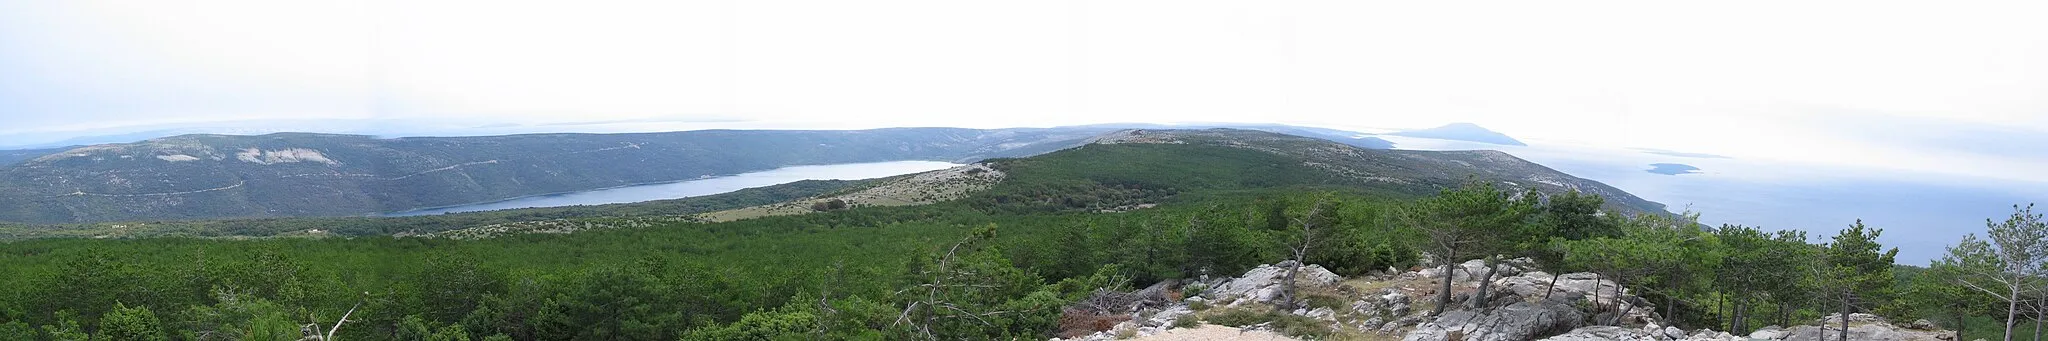 Photo showing: Das Panorama wurde vom höchsten Punkt südlich der Creser Bucht (Creski Zaljev) aufgenommen, dem Gipfel des 483 m hohen „Helm“.
Aufgenommener Winkel in Himmelsrichtungen von ONO bis SW, also circa 135°.

In der linken Hälfte erkennt man den Vrana-See, zu Beginn des rechten Drittels im Hintergrund den höchsten Gipfel der Insel Lošinj. Im rechten Drittel die kleine unbewohnte Insel Zeća, und etwas weiter im Hintergrund Unije.